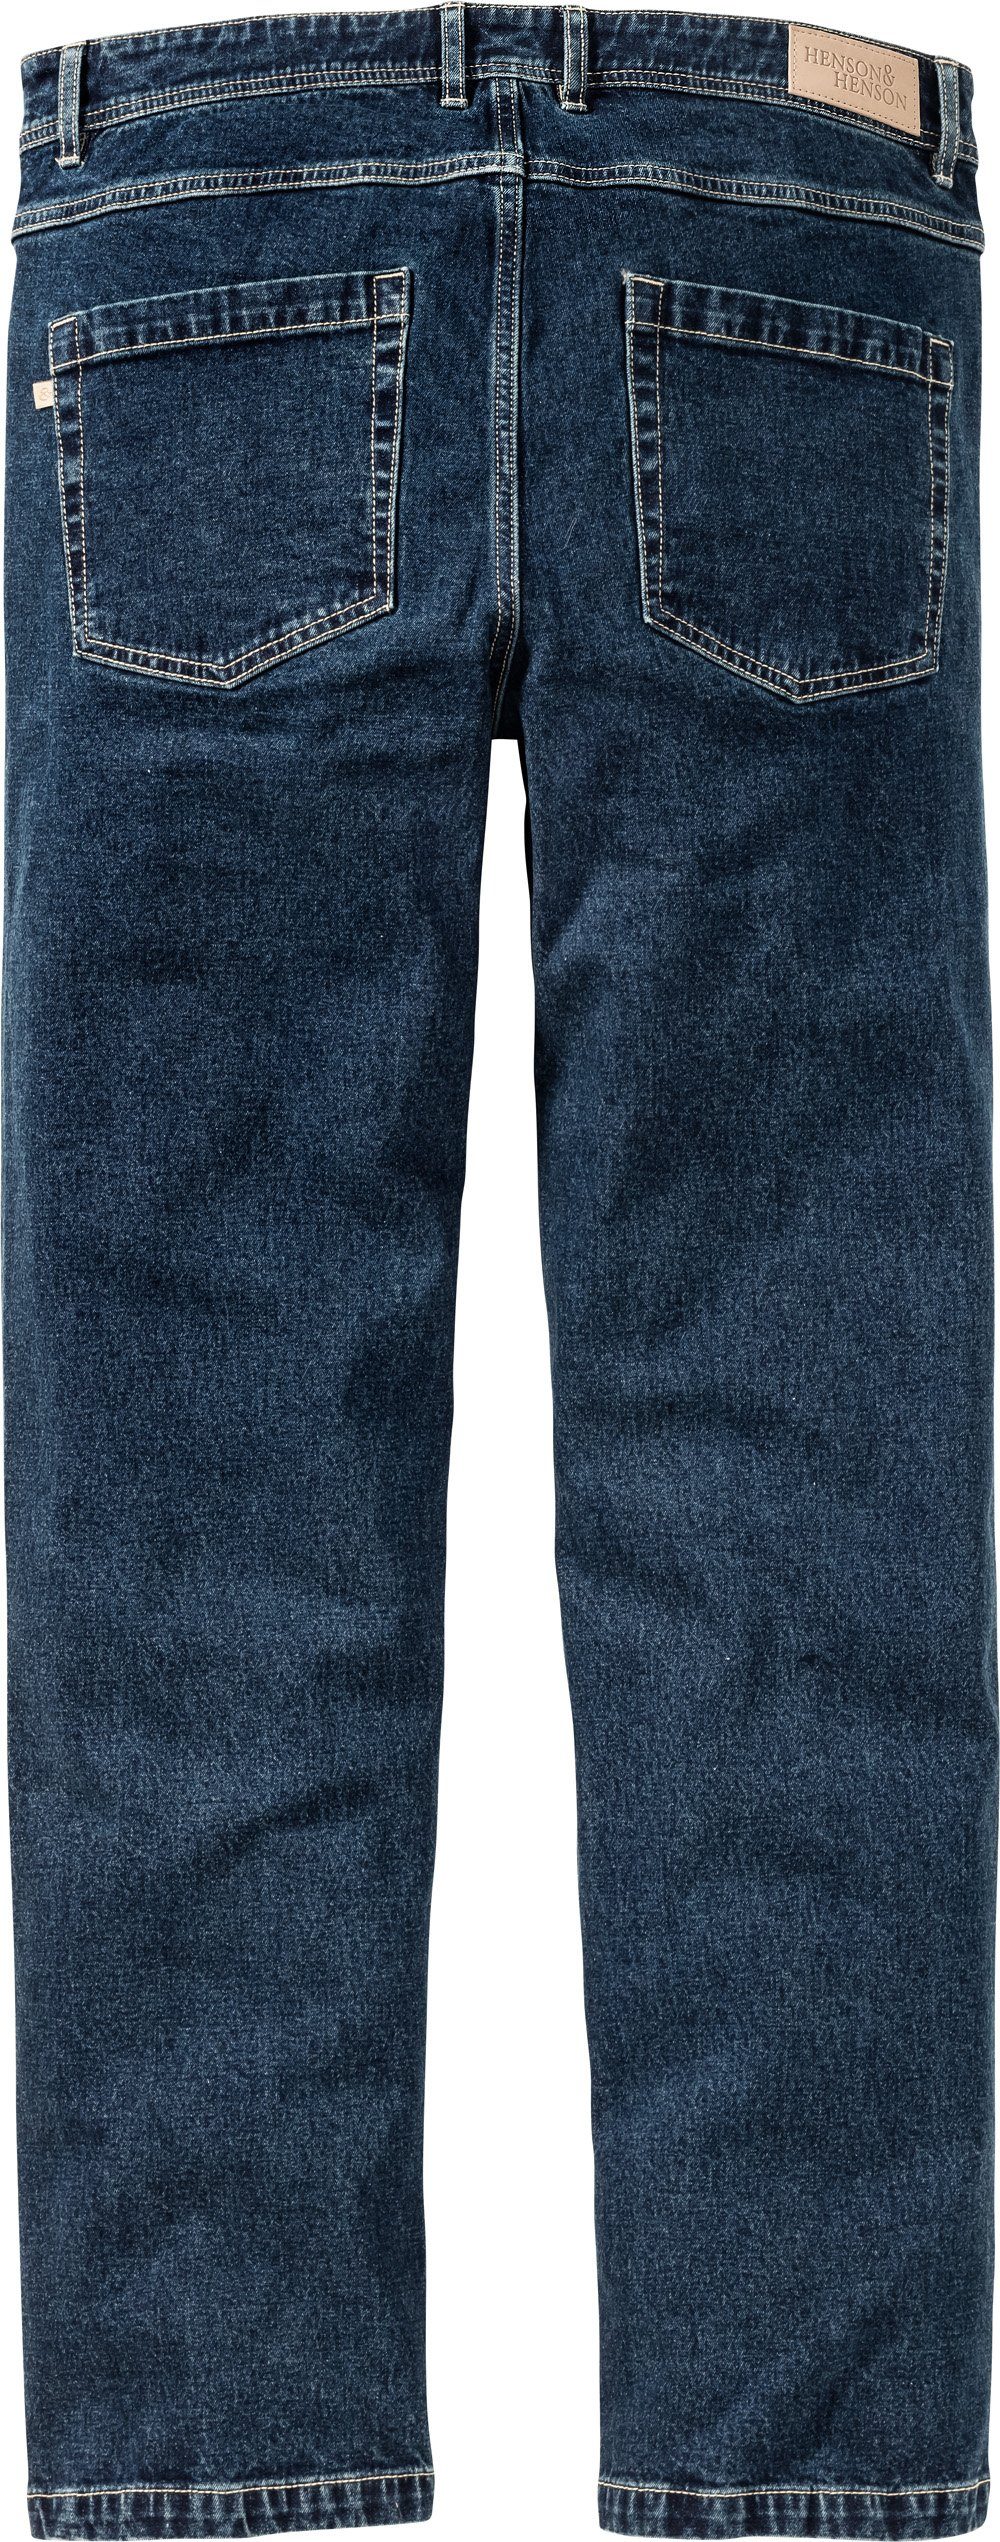 HENSON&HENSON Set, klassische 2 Stretch-Qualität komfortable einem in Denim-Farben Regular-fit-Jeans